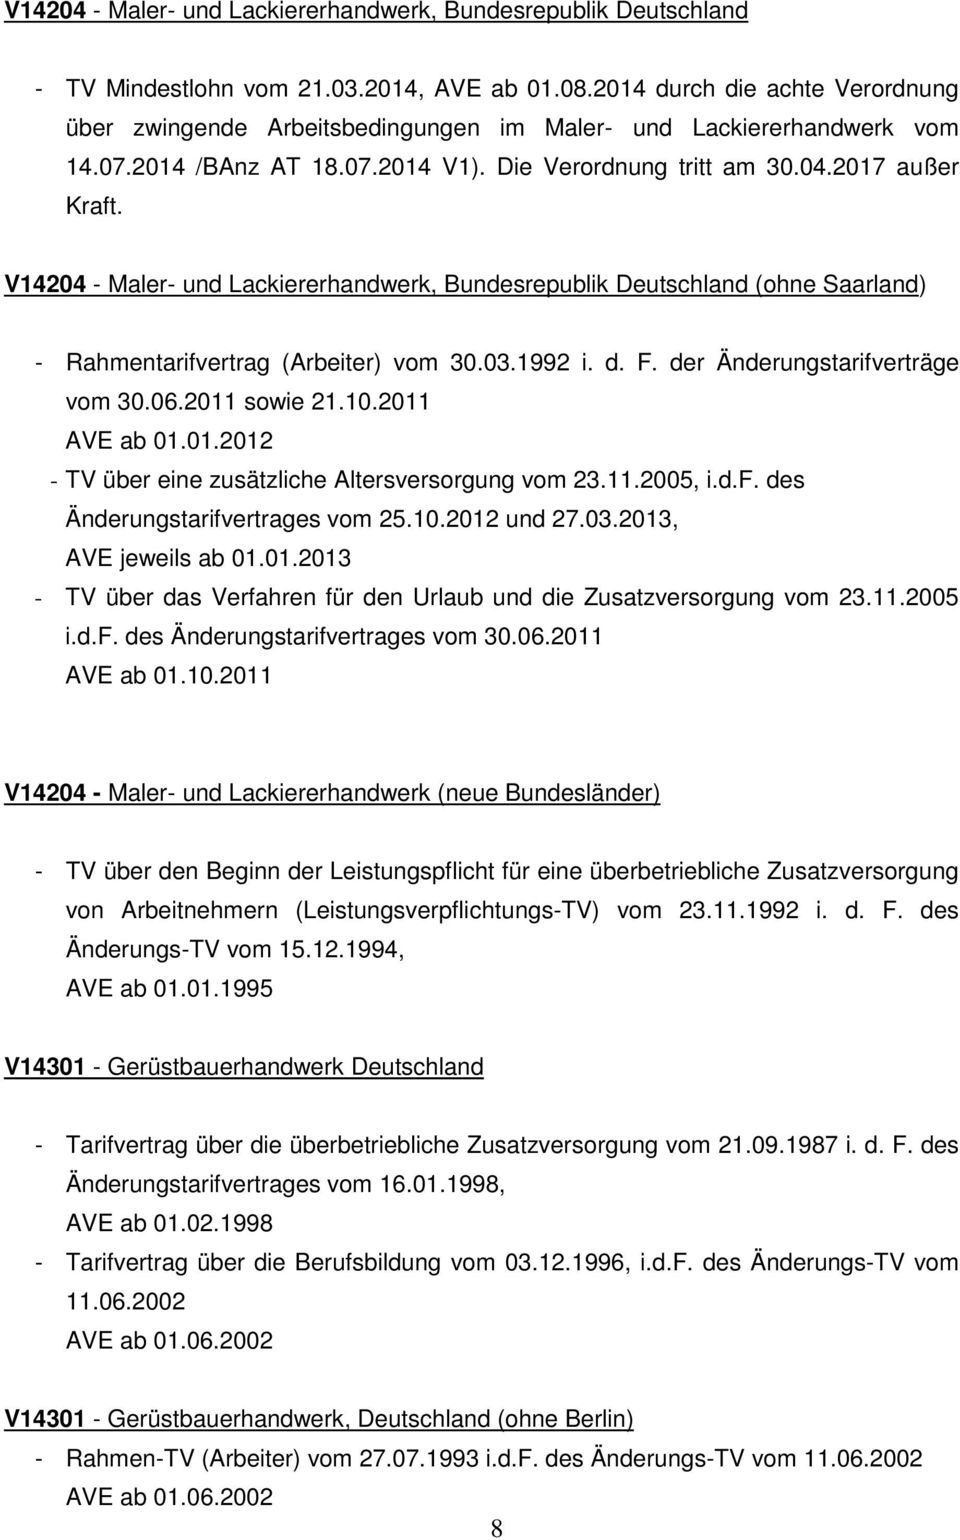 V14204 - Maler- und Lackiererhandwerk, Bundesrepublik Deutschland (ohne Saarland) - Rahmentarifvertrag (Arbeiter) vom 30.03.1992 i. d. F. der Änderungstarifverträge vom 30.06.2011 sowie 21.10.